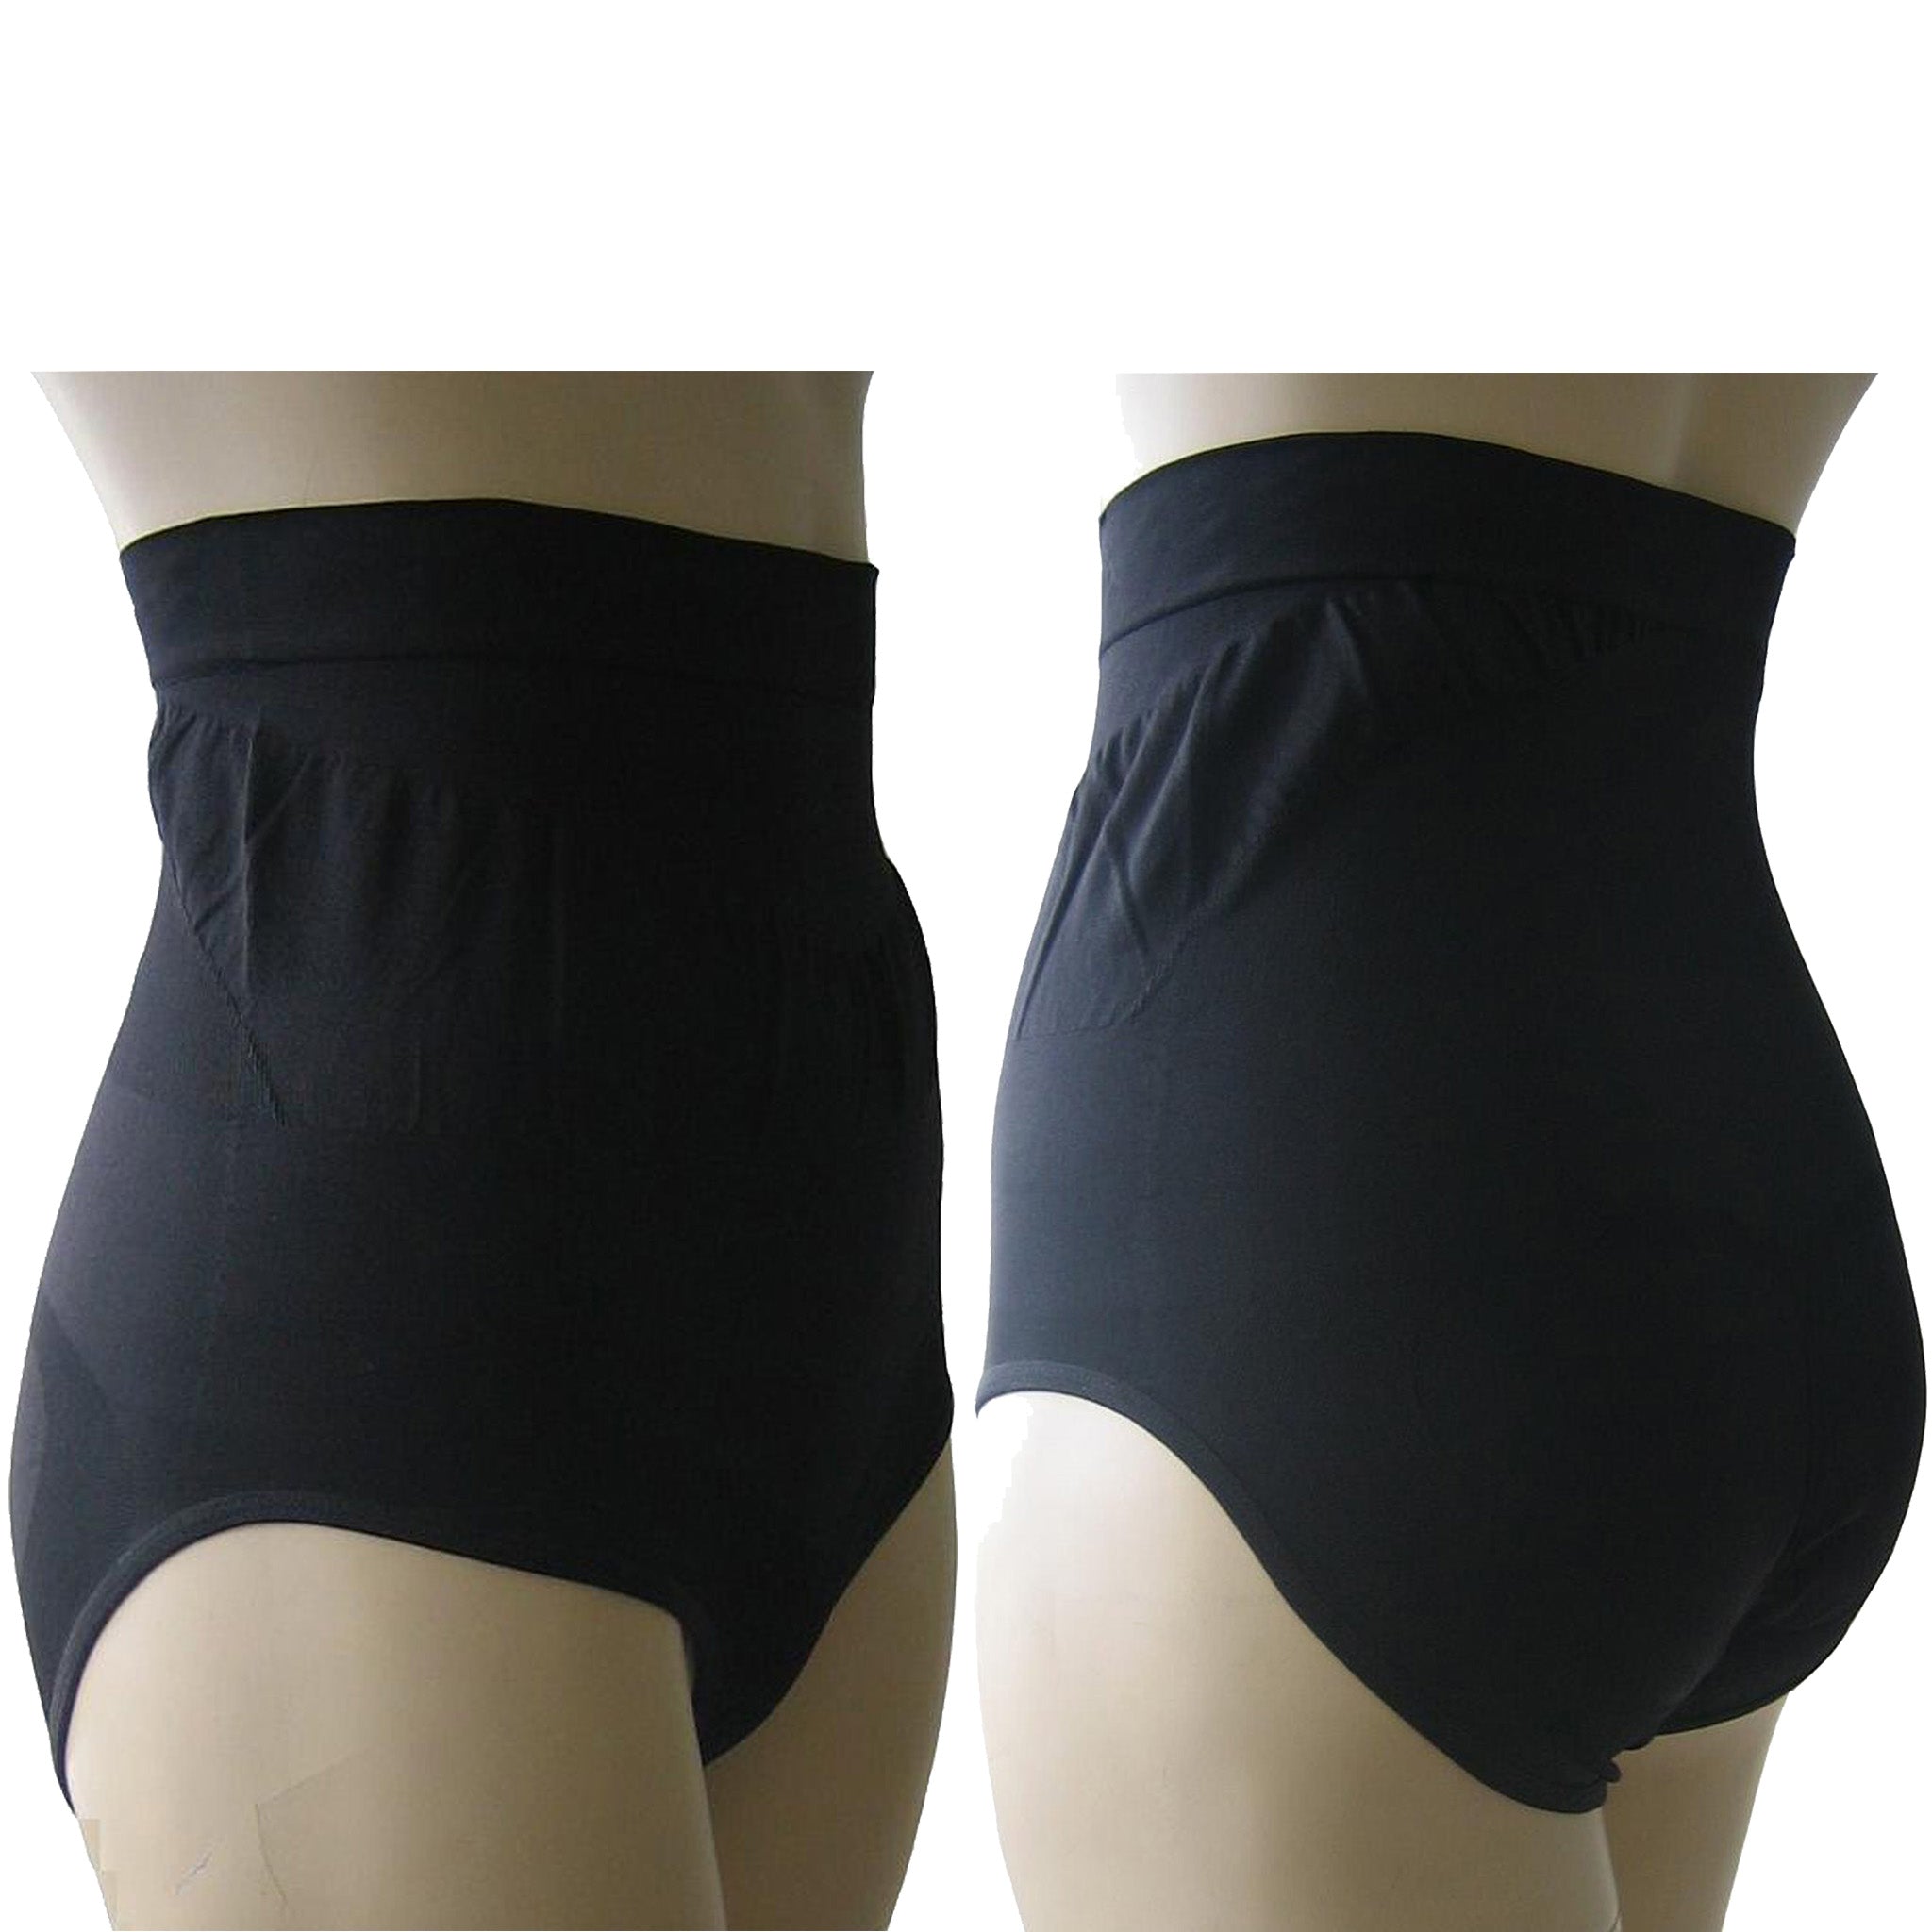 NAUTICA INTIMATES SHAPEWEAR Seamless Black High Waist Panty Women's Size  Medium £23.16 - PicClick UK